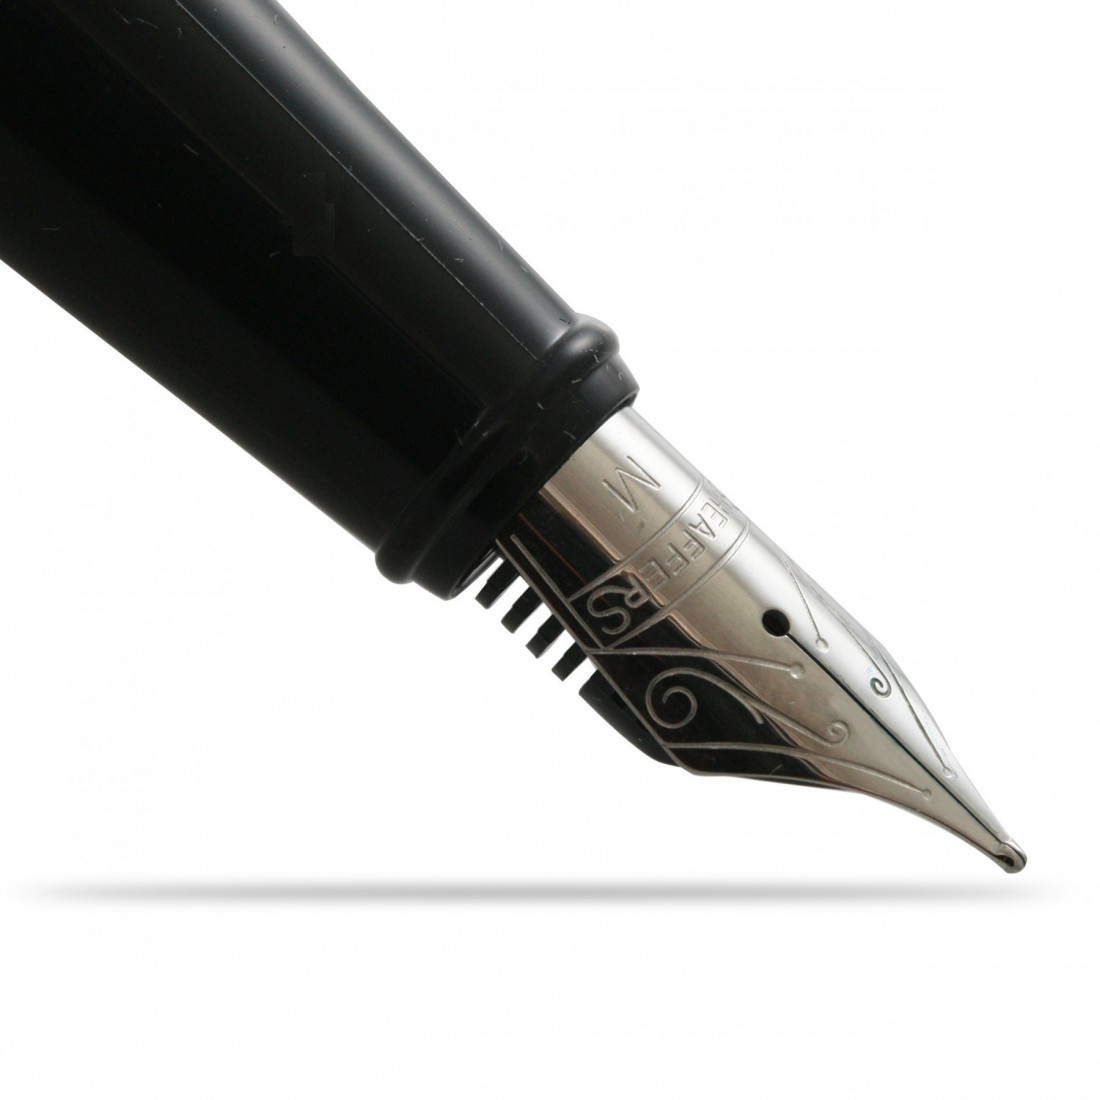 Sheaffer 300 Straight Line Chrome Trim Fountain Pen (9326-0)